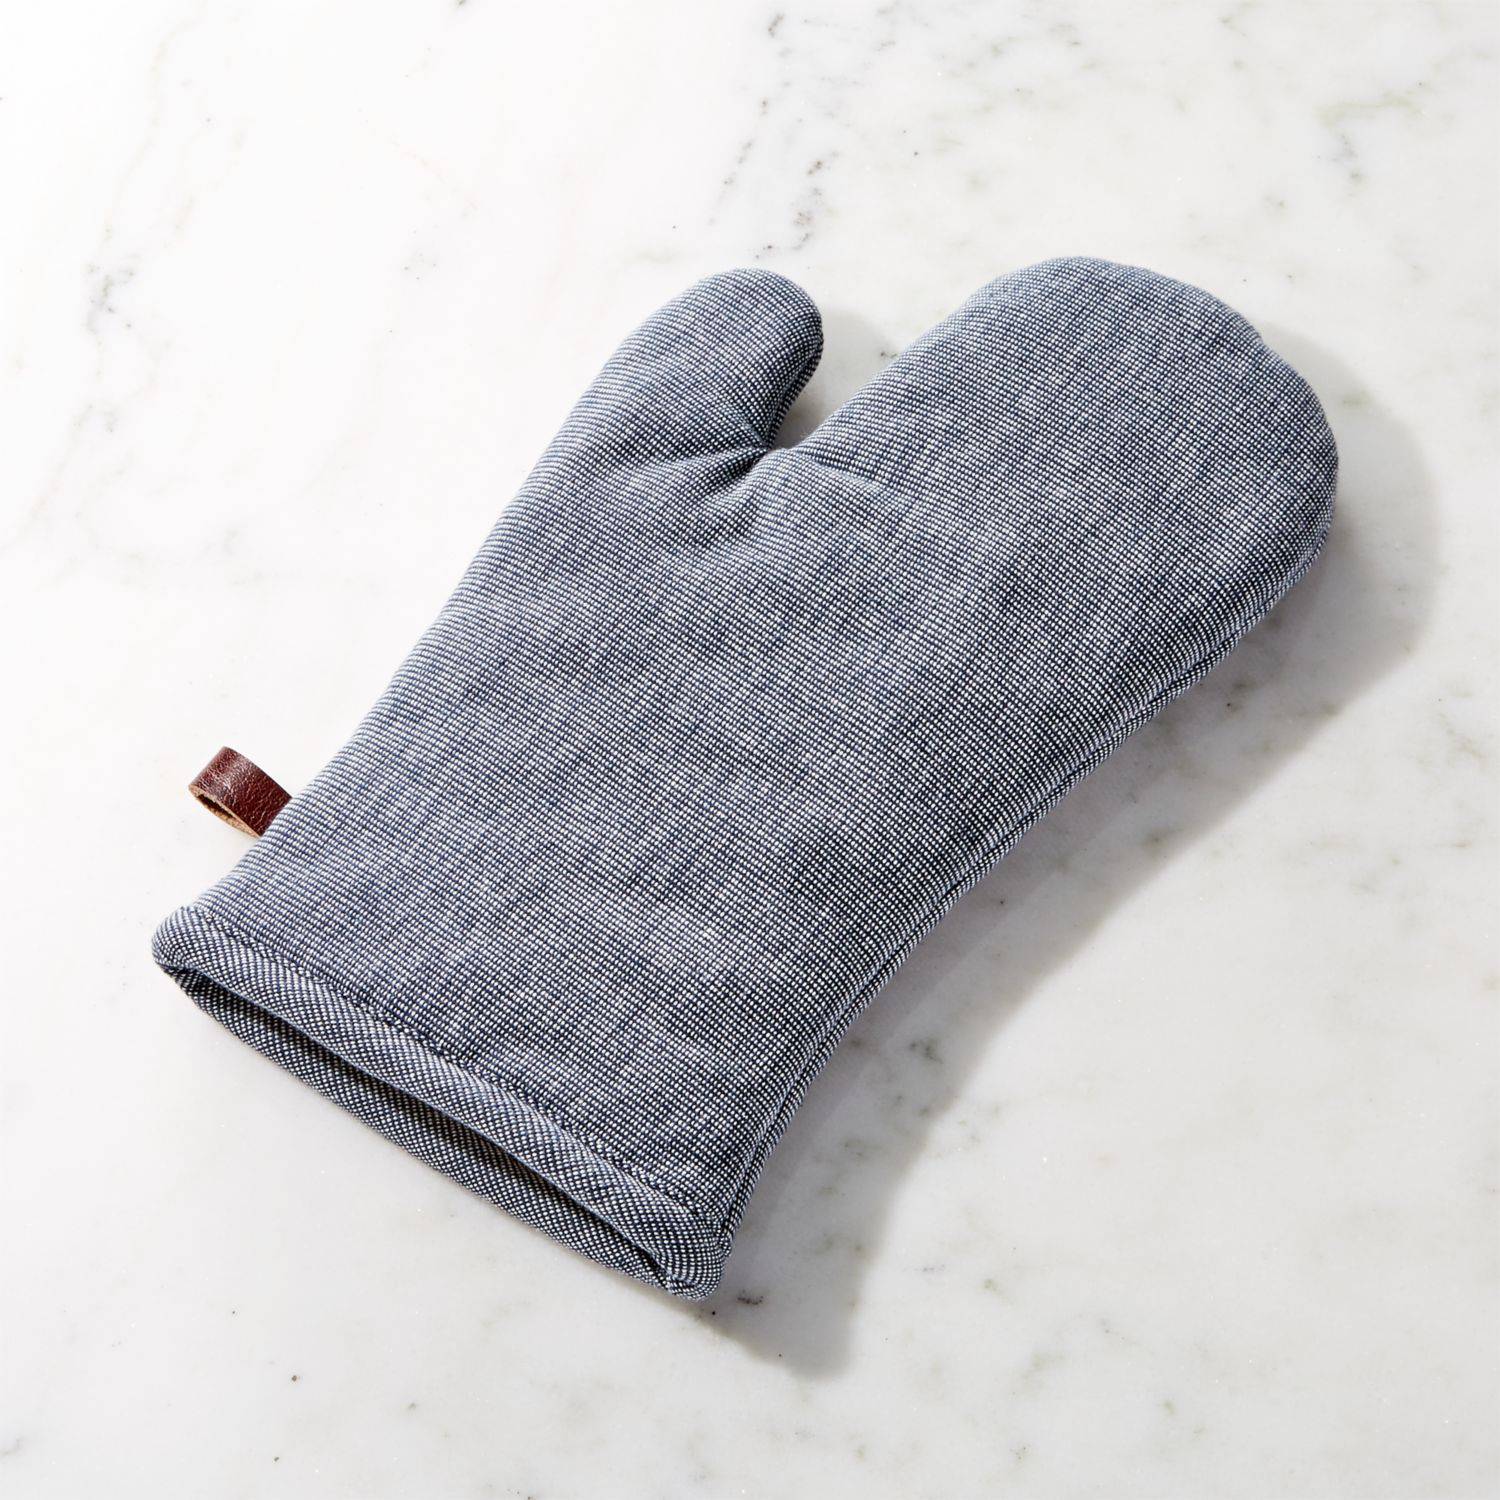 Guantes para horno, 1 par de guantes de horno divertidos con diseño de pata  de gato, mezcla de algodón duradero, resistentes al calor, 12.2 x 5.9 in